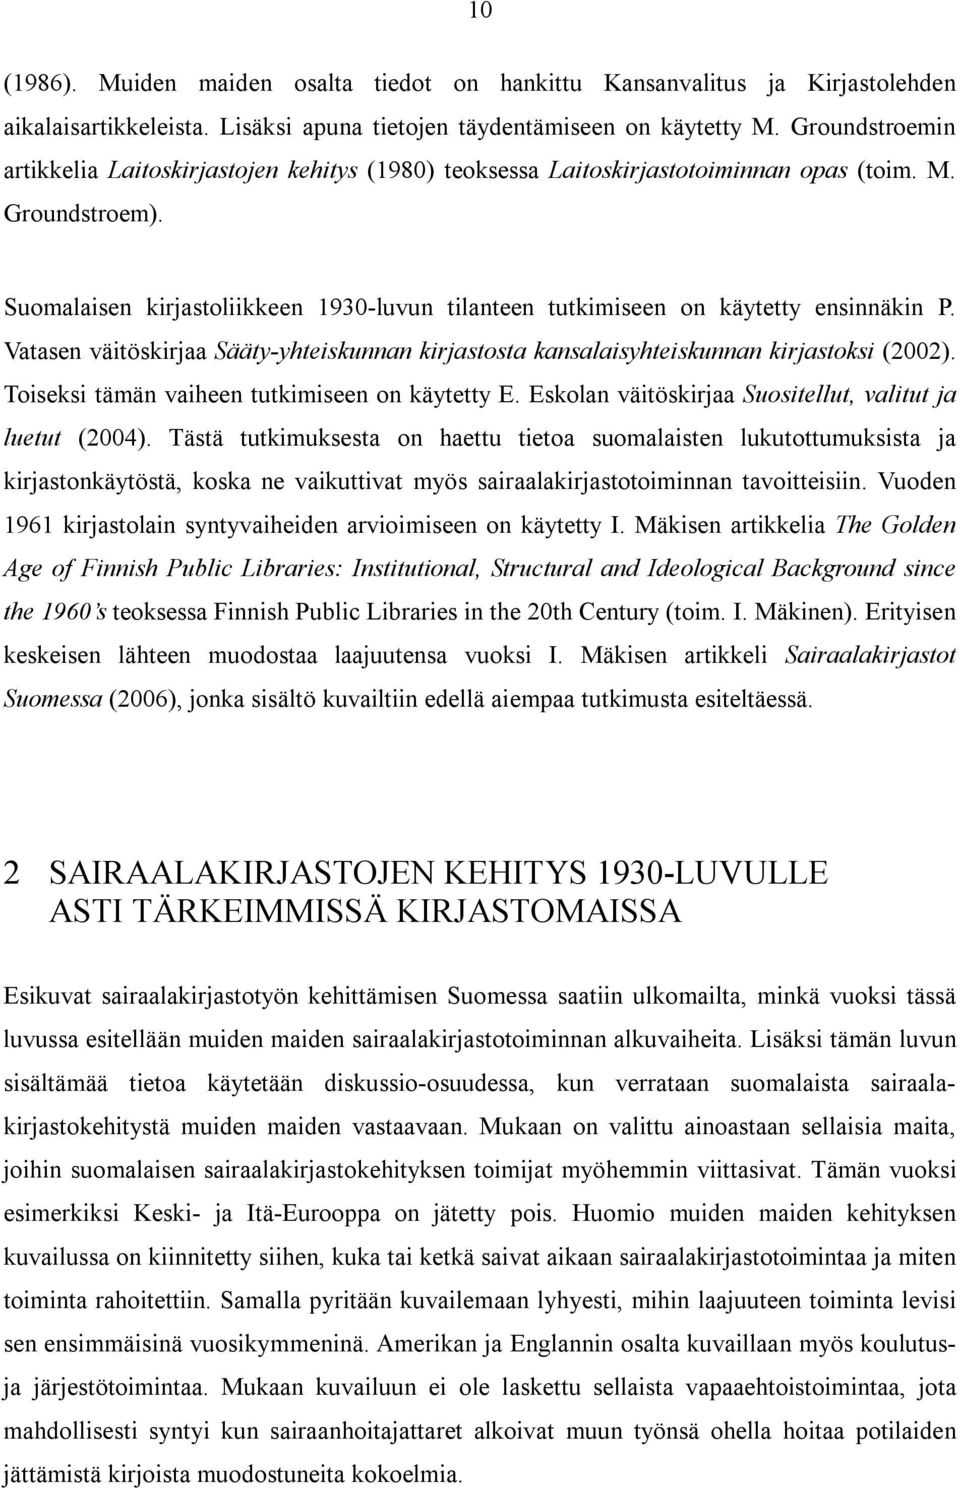 Suomalaisen kirjastoliikkeen 1930-luvun tilanteen tutkimiseen on käytetty ensinnäkin P. Vatasen väitöskirjaa Sääty-yhteiskunnan kirjastosta kansalaisyhteiskunnan kirjastoksi (2002).